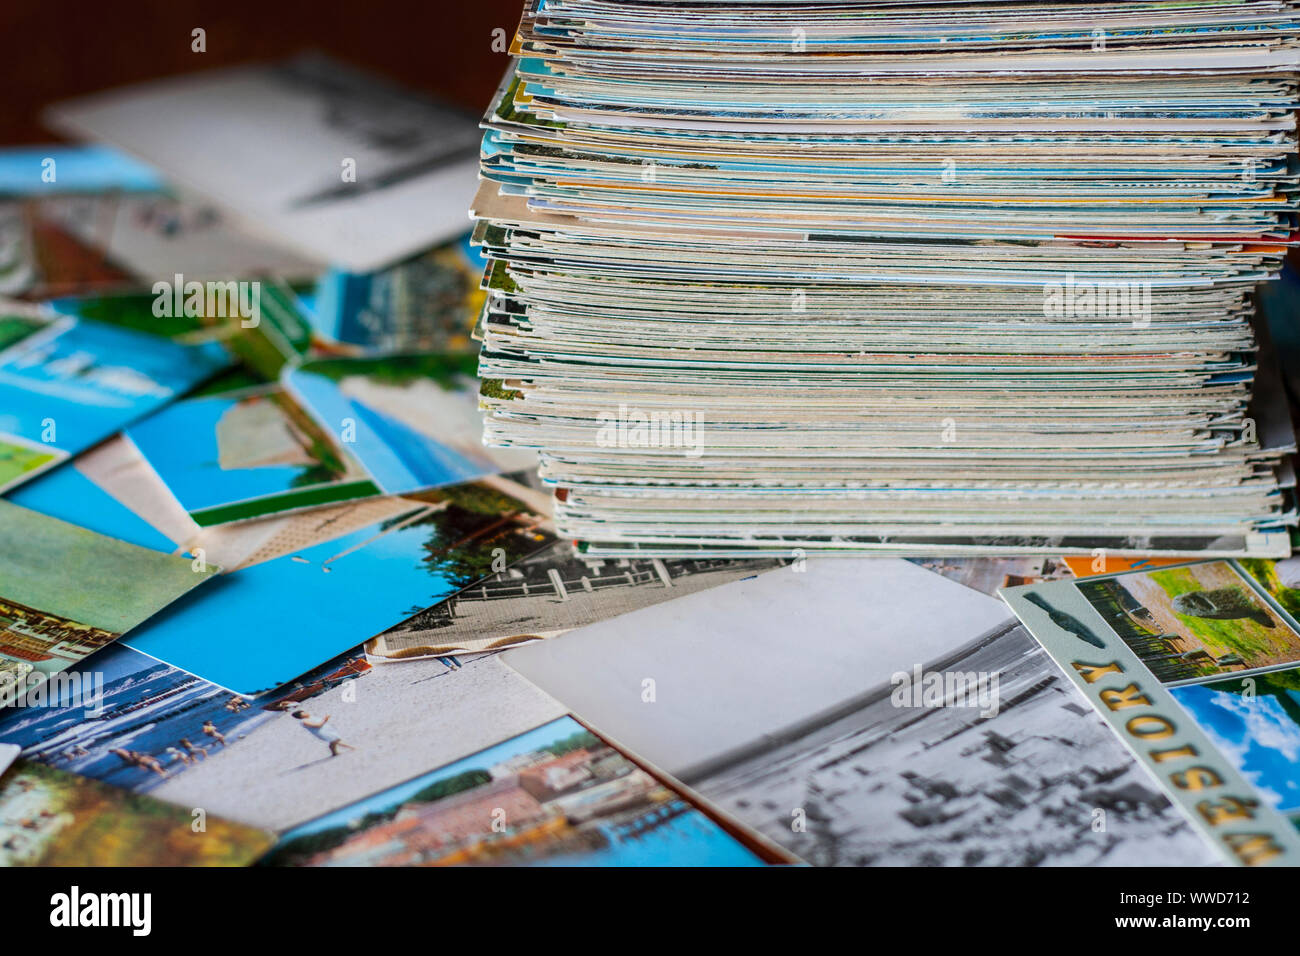 Pila di poche centinaia di cartoline vecchie raccolta su altre cartoline sparsi intorno al tavolo Foto Stock